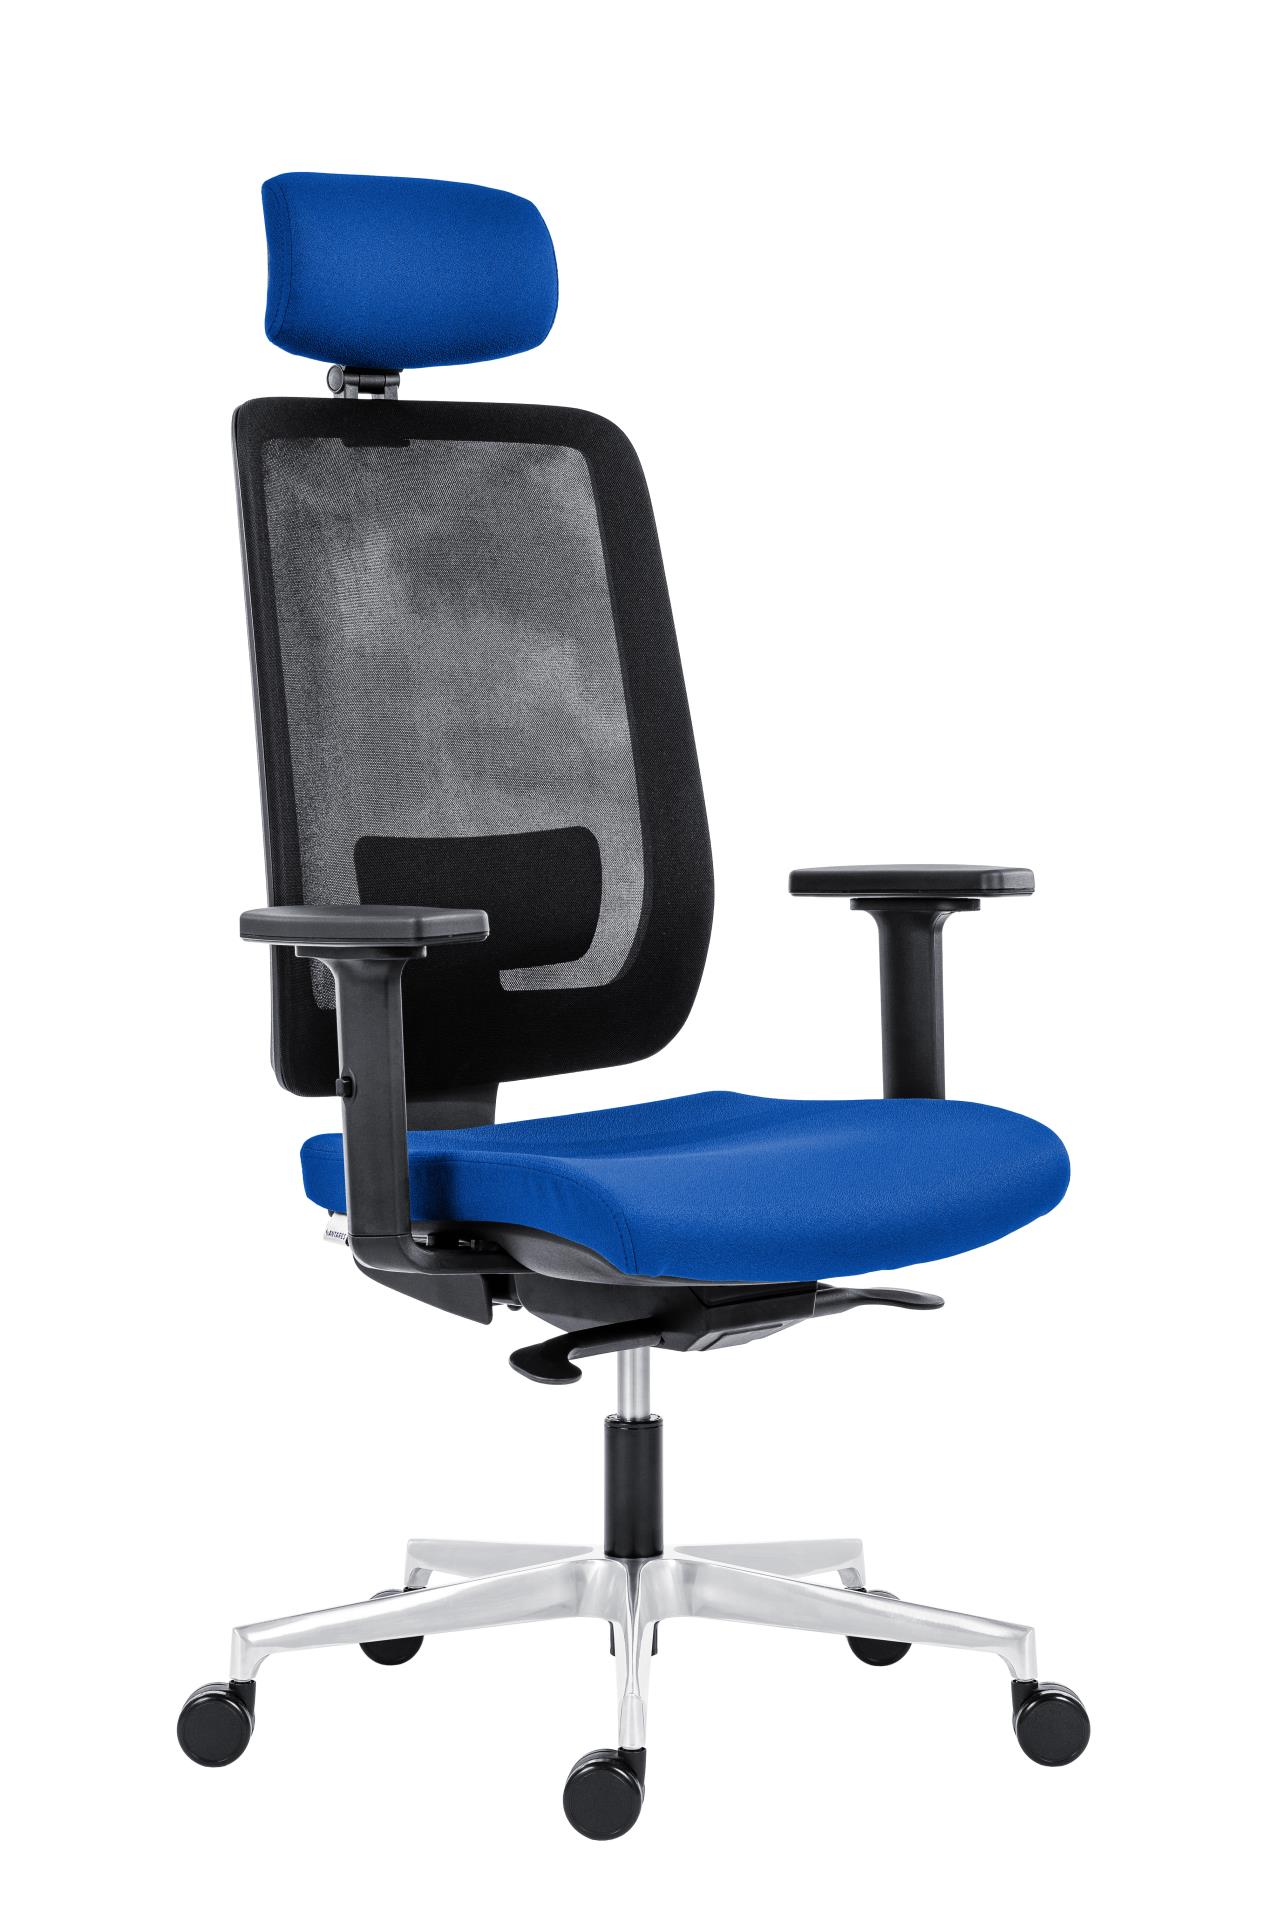 Antares Kancelářská židle Eclipse Net - s podhlavníkem, synchronní, modrá